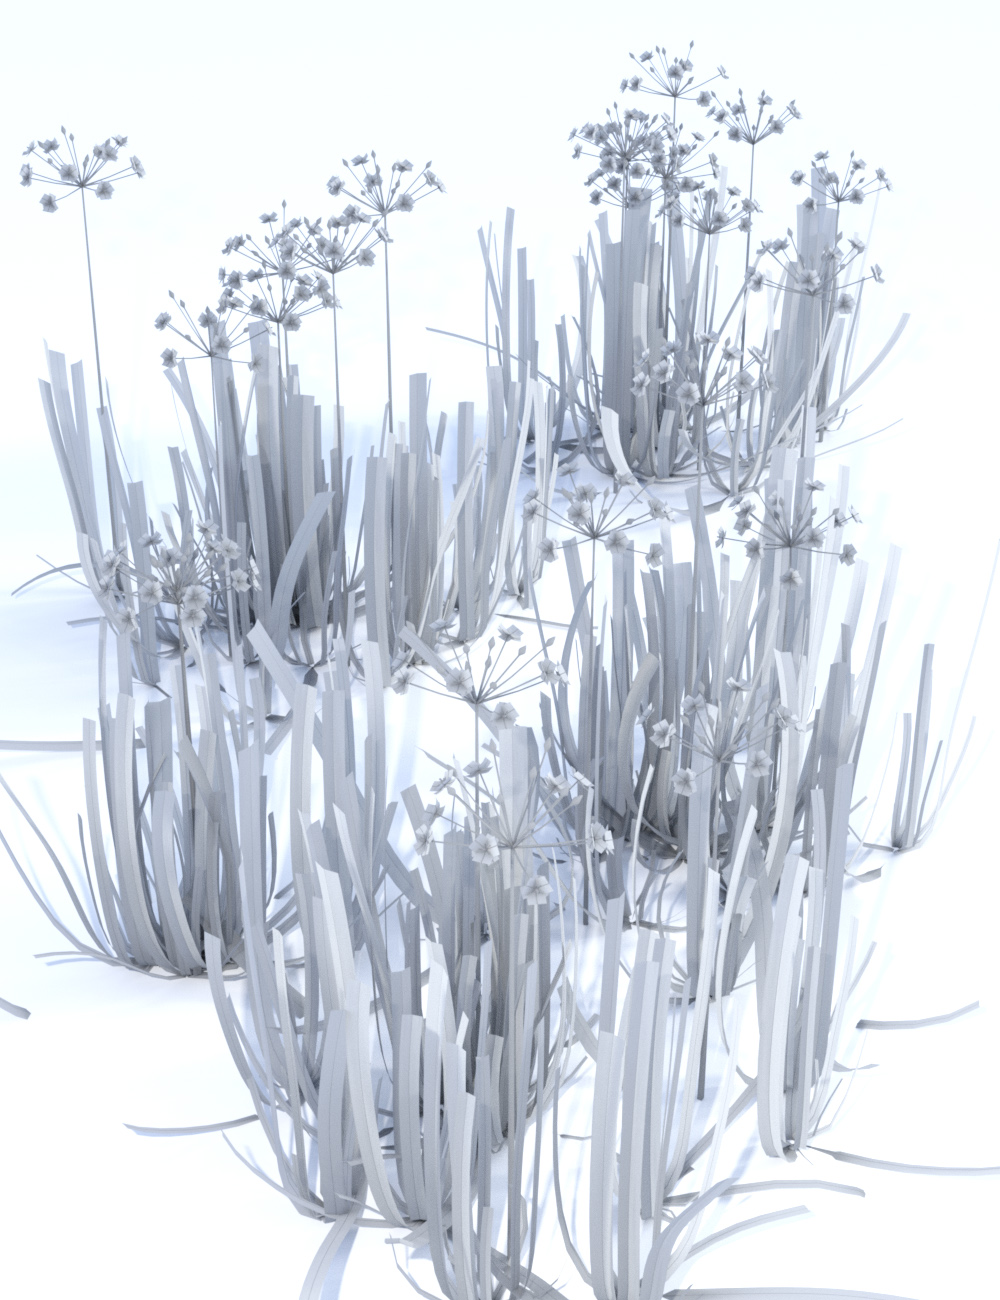 Wild Flowers - Water Plants vol 1 by: MartinJFrost, 3D Models by Daz 3D